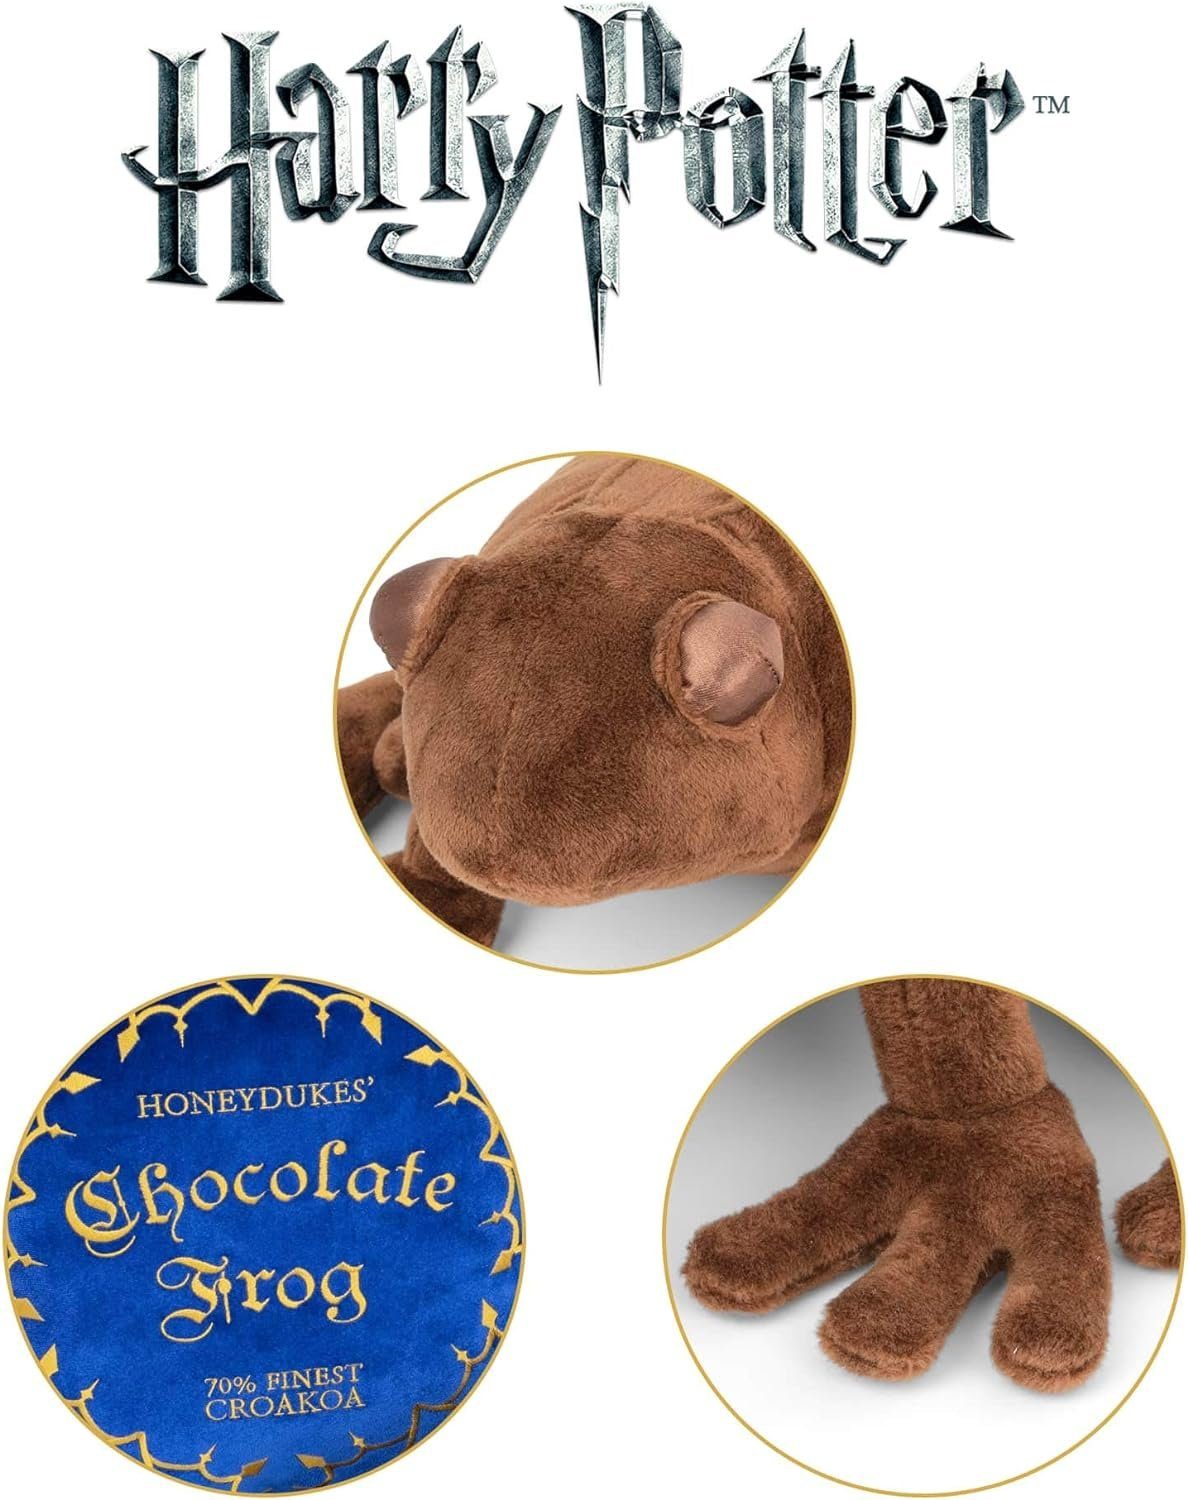 und Collection Merchandise-Figur offiziell Plüschtier Potter Honeydukes Kissen, Harry Schokoladenfrosch The Merchandise Noble lizensiertes